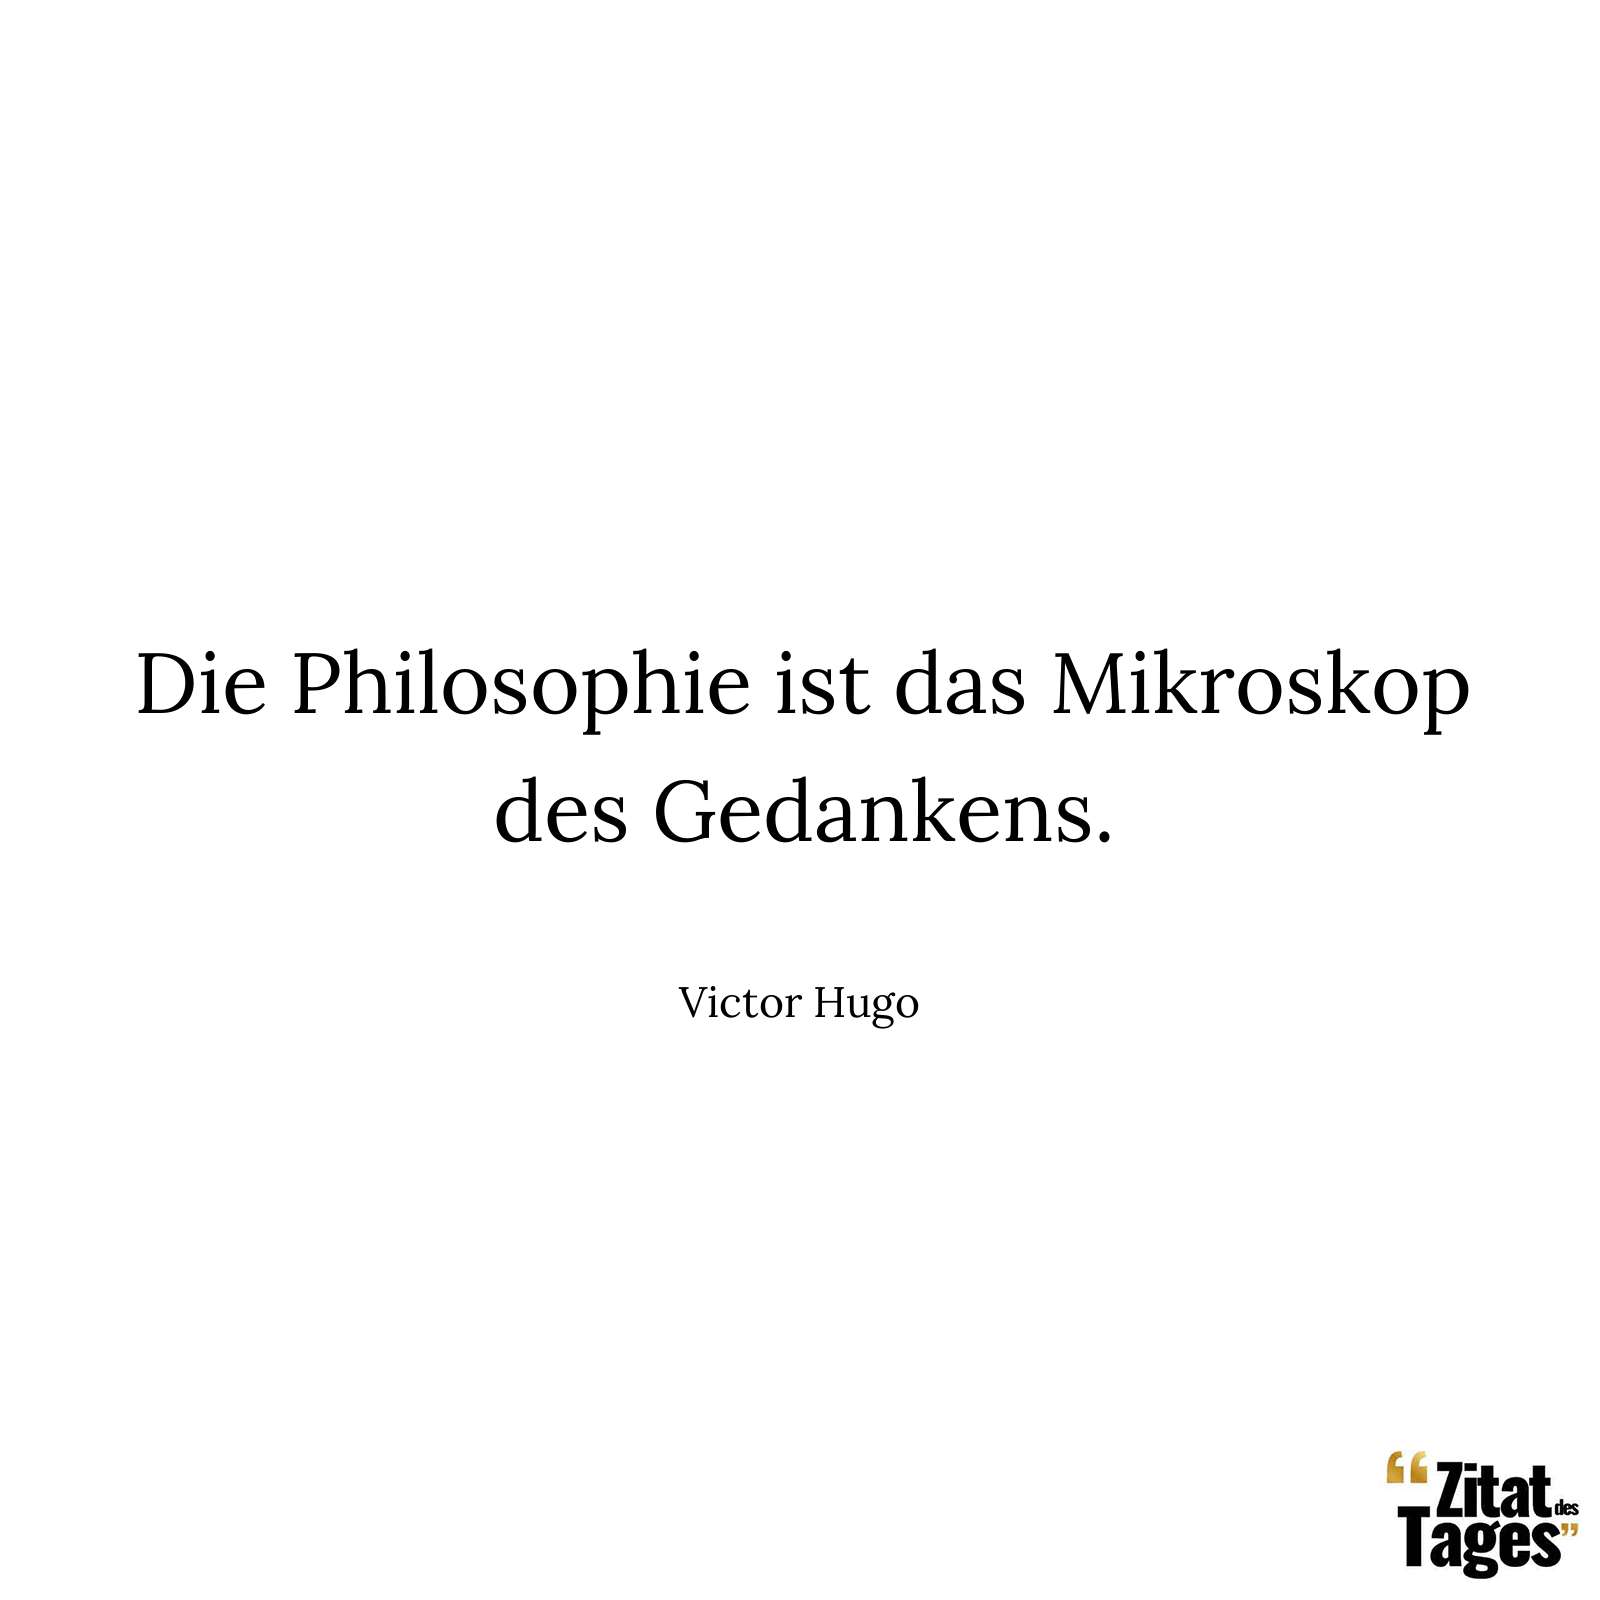 Die Philosophie ist das Mikroskop des Gedankens. - Victor Hugo